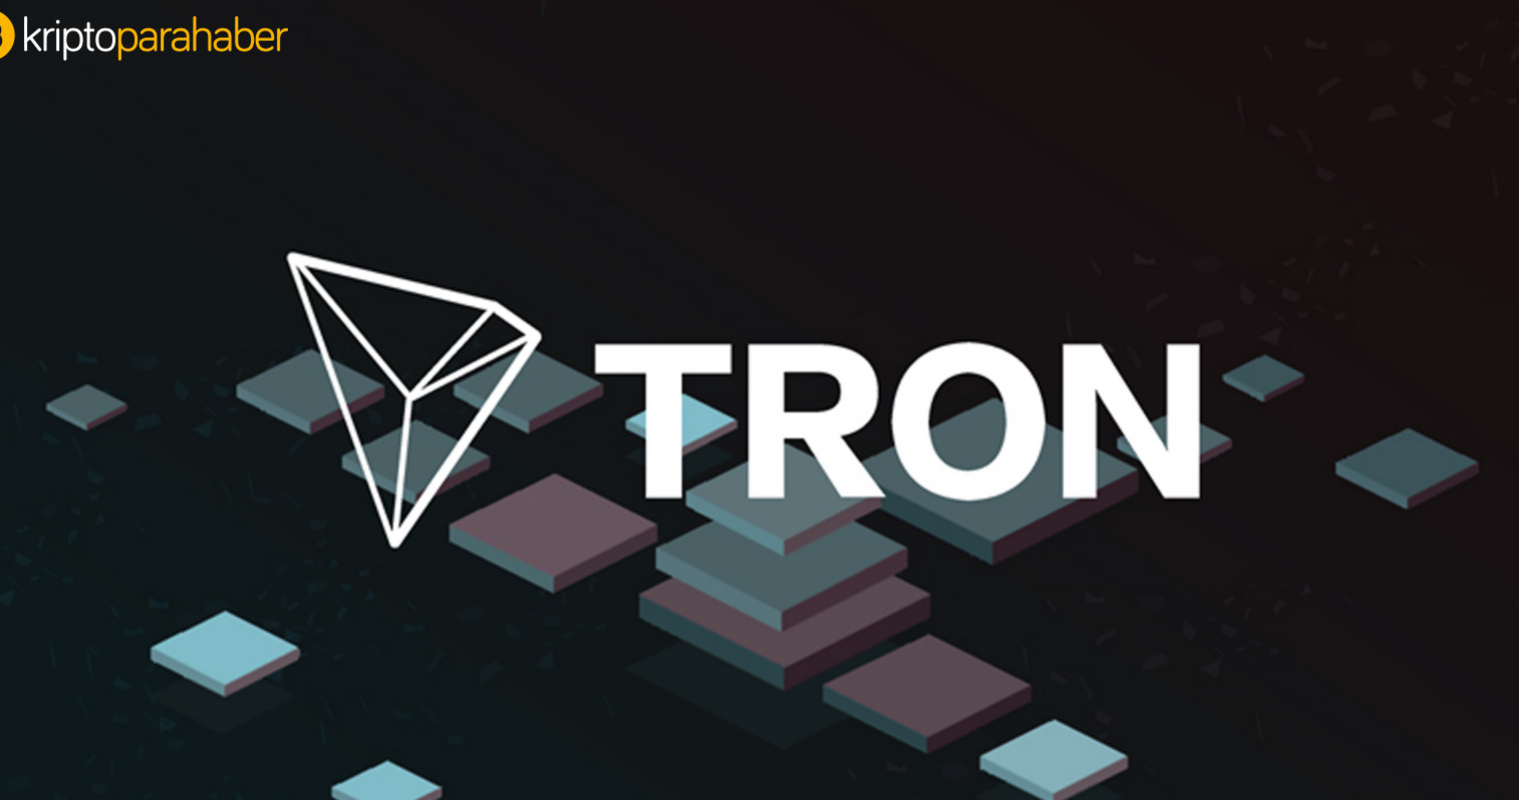 TRON (TRX), üç gün içinde beş kripto para borsasında listelendi